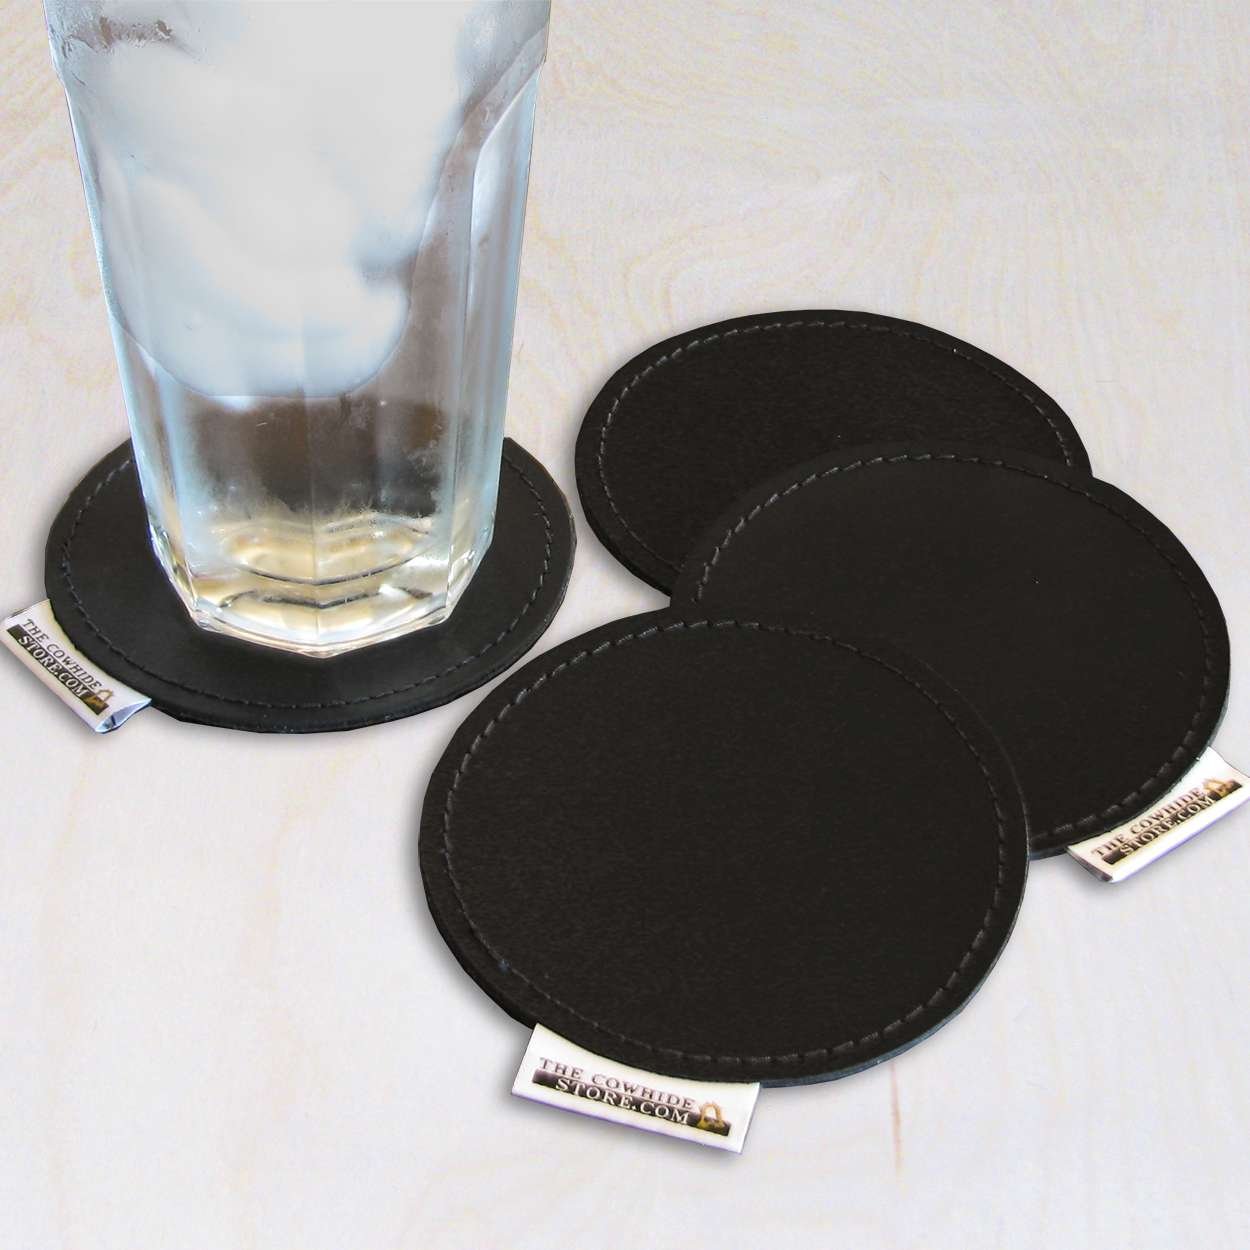 Genuine Black Leather Coasters - Set of 4